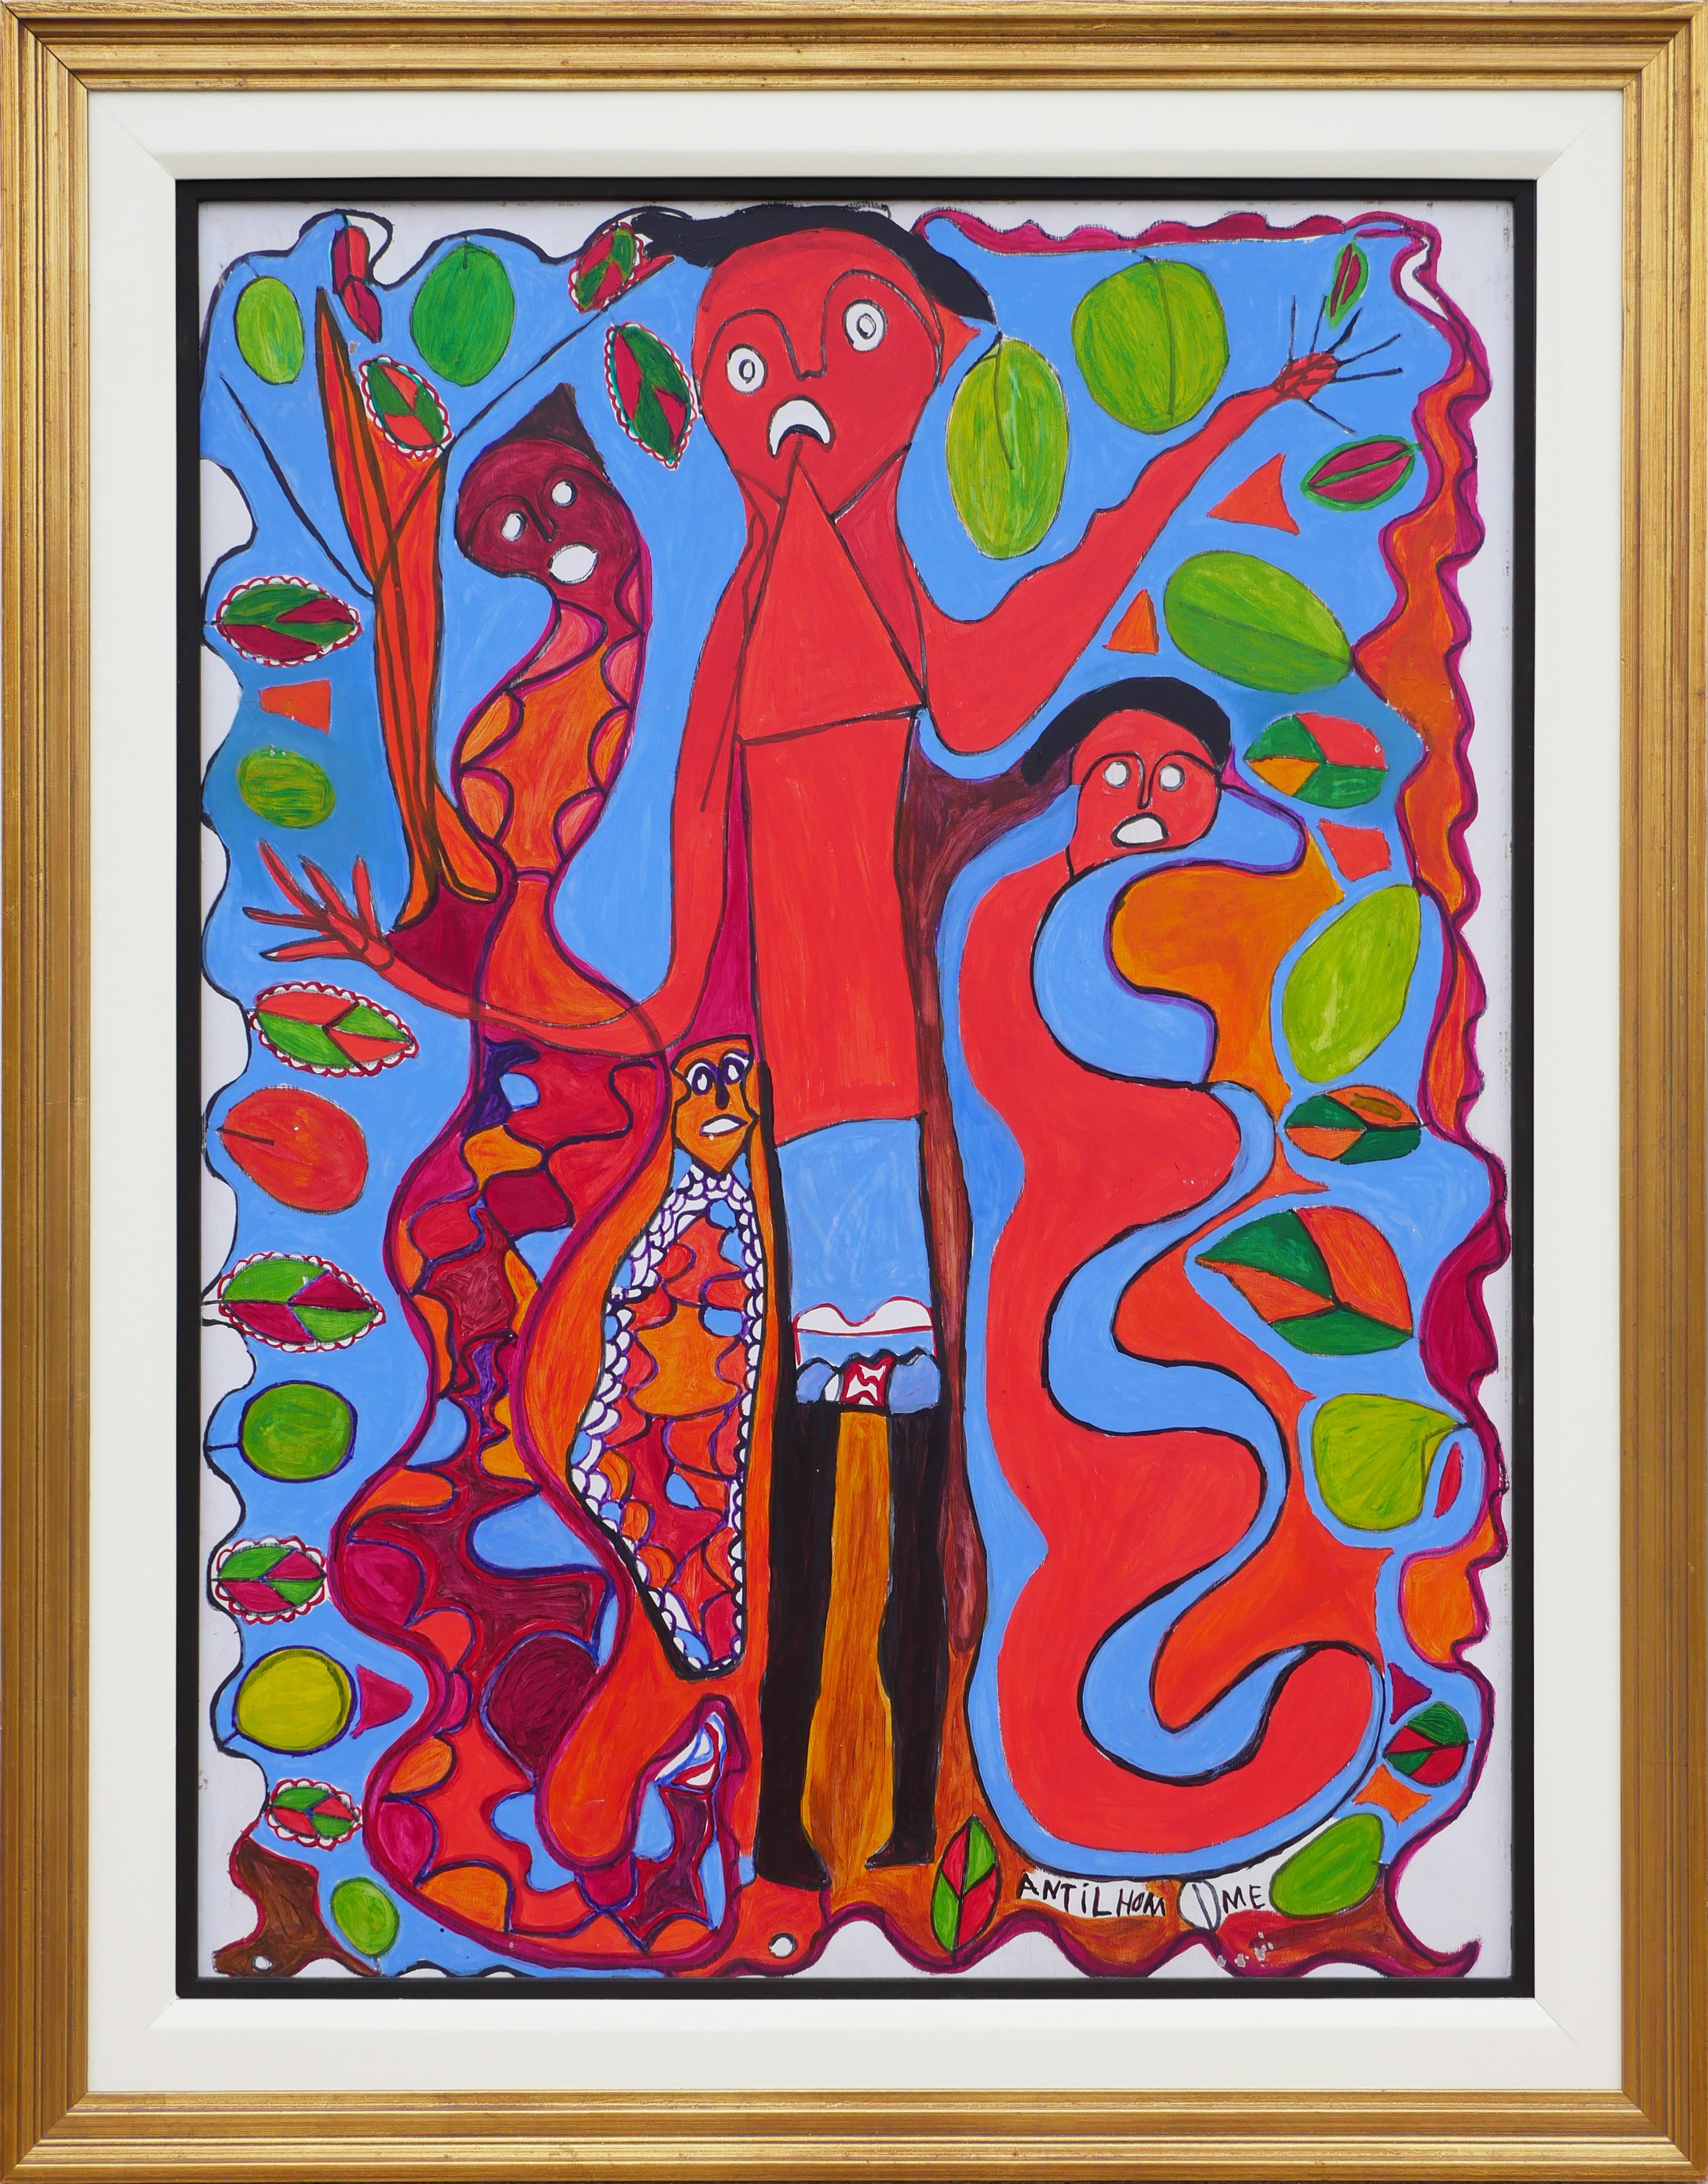 Figurative Painting Richard Antilhomme - Peinture figurative abstraite rouge et bleue avec quatre personnages et éléments botaniques